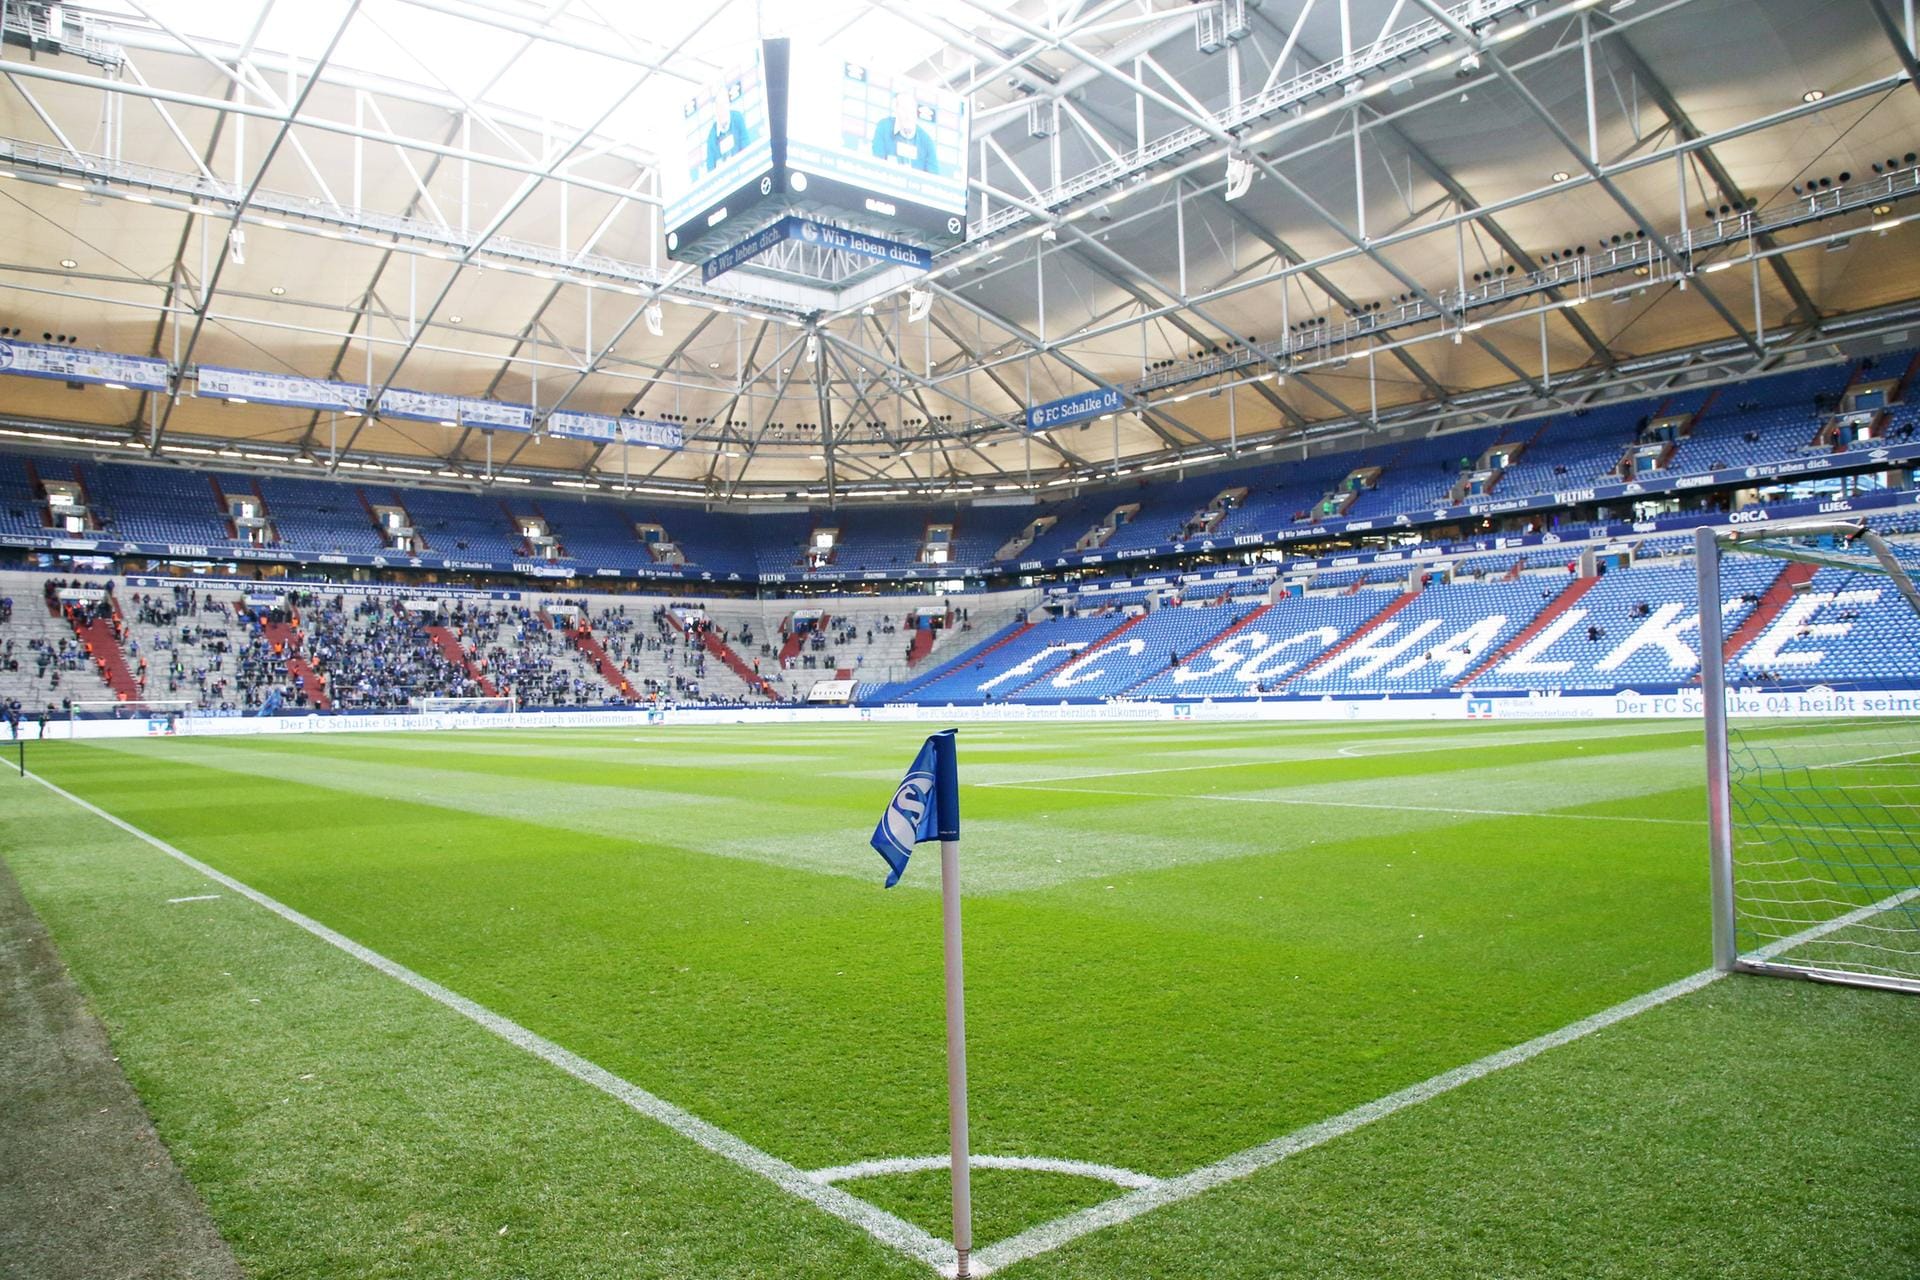 Die Bronzemedaille mit einem Schnitt von 4,5 teilen sich vier Erst- und drei Zweitligastadien. Über ihre positiven Bewertungen können sich die Veltins-Arena (Schalke 04), das Schwarzwaldstadion (SC Freiburg), das Weserstadion (Werder Bremen) und das Olympiastadion (Hertha BSC) freuen.